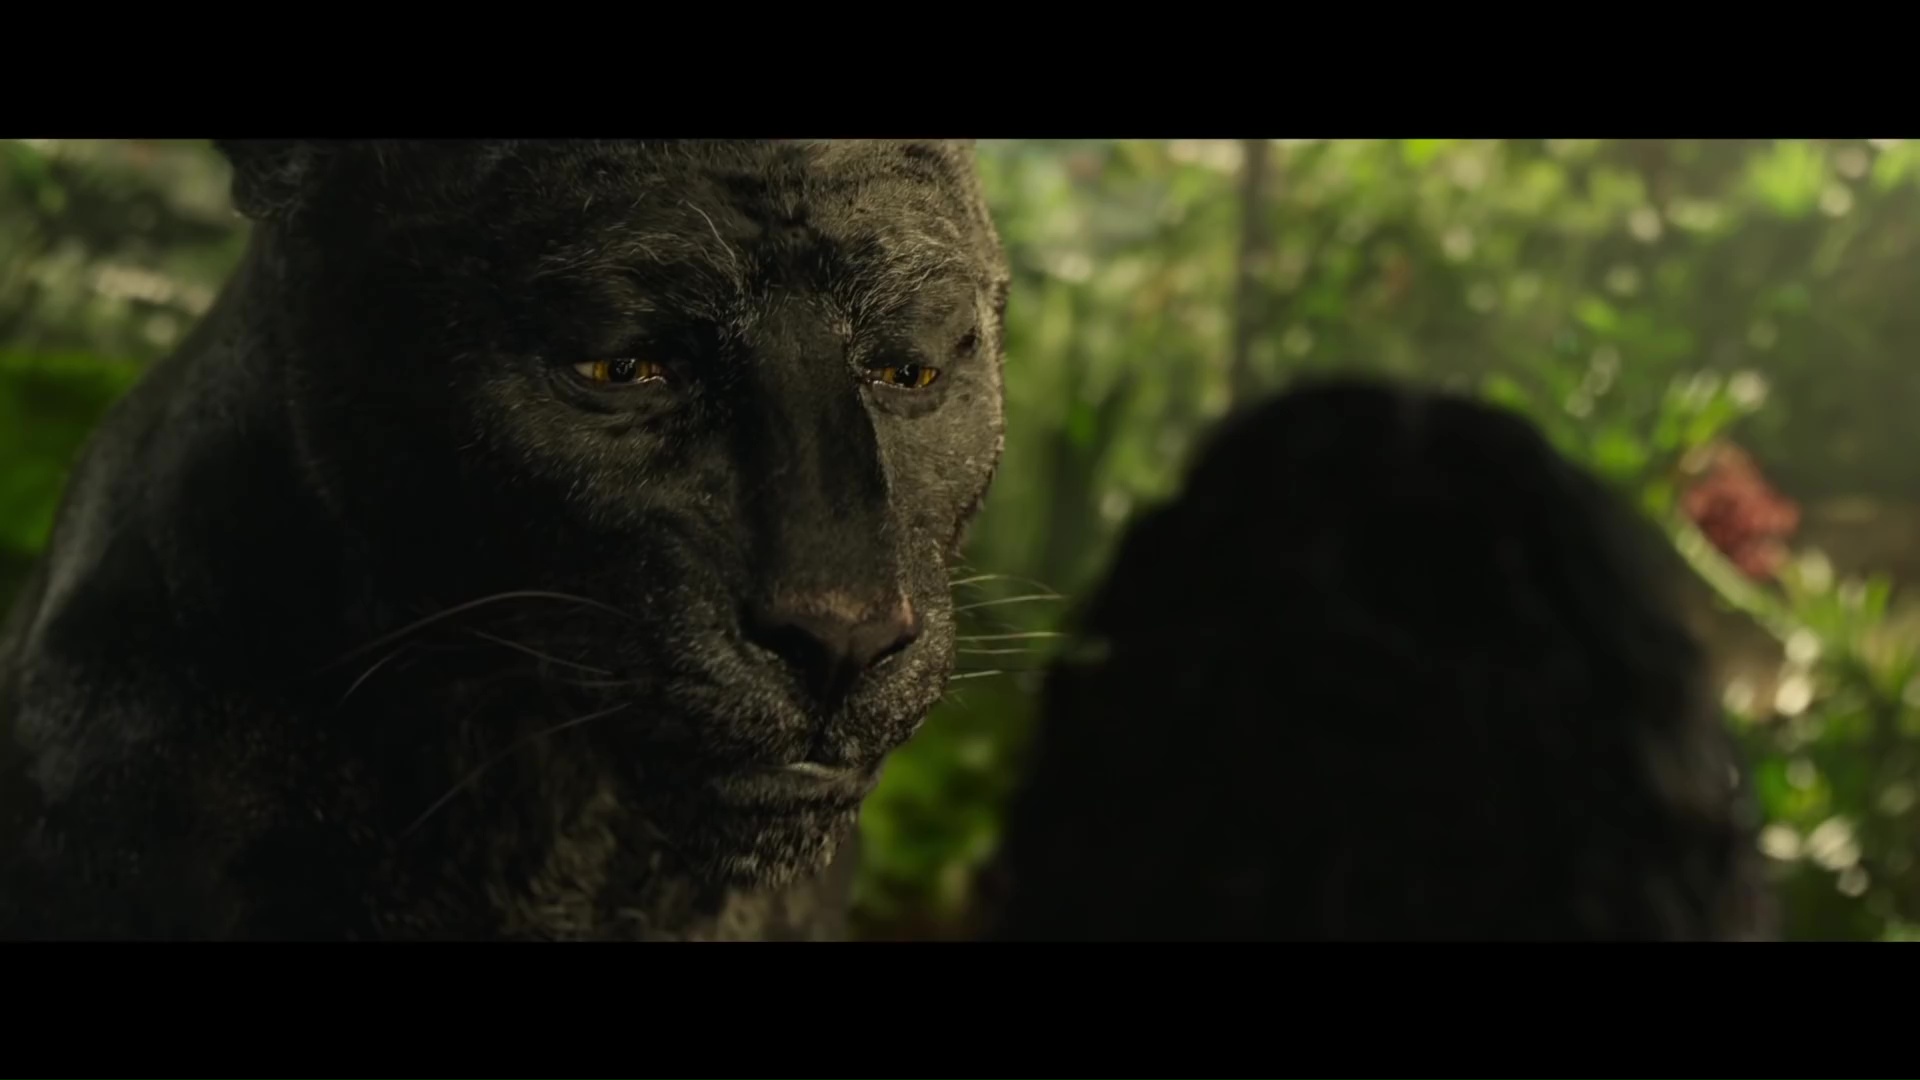 Jungle Book vs Mowgli bagheera_mowgli_